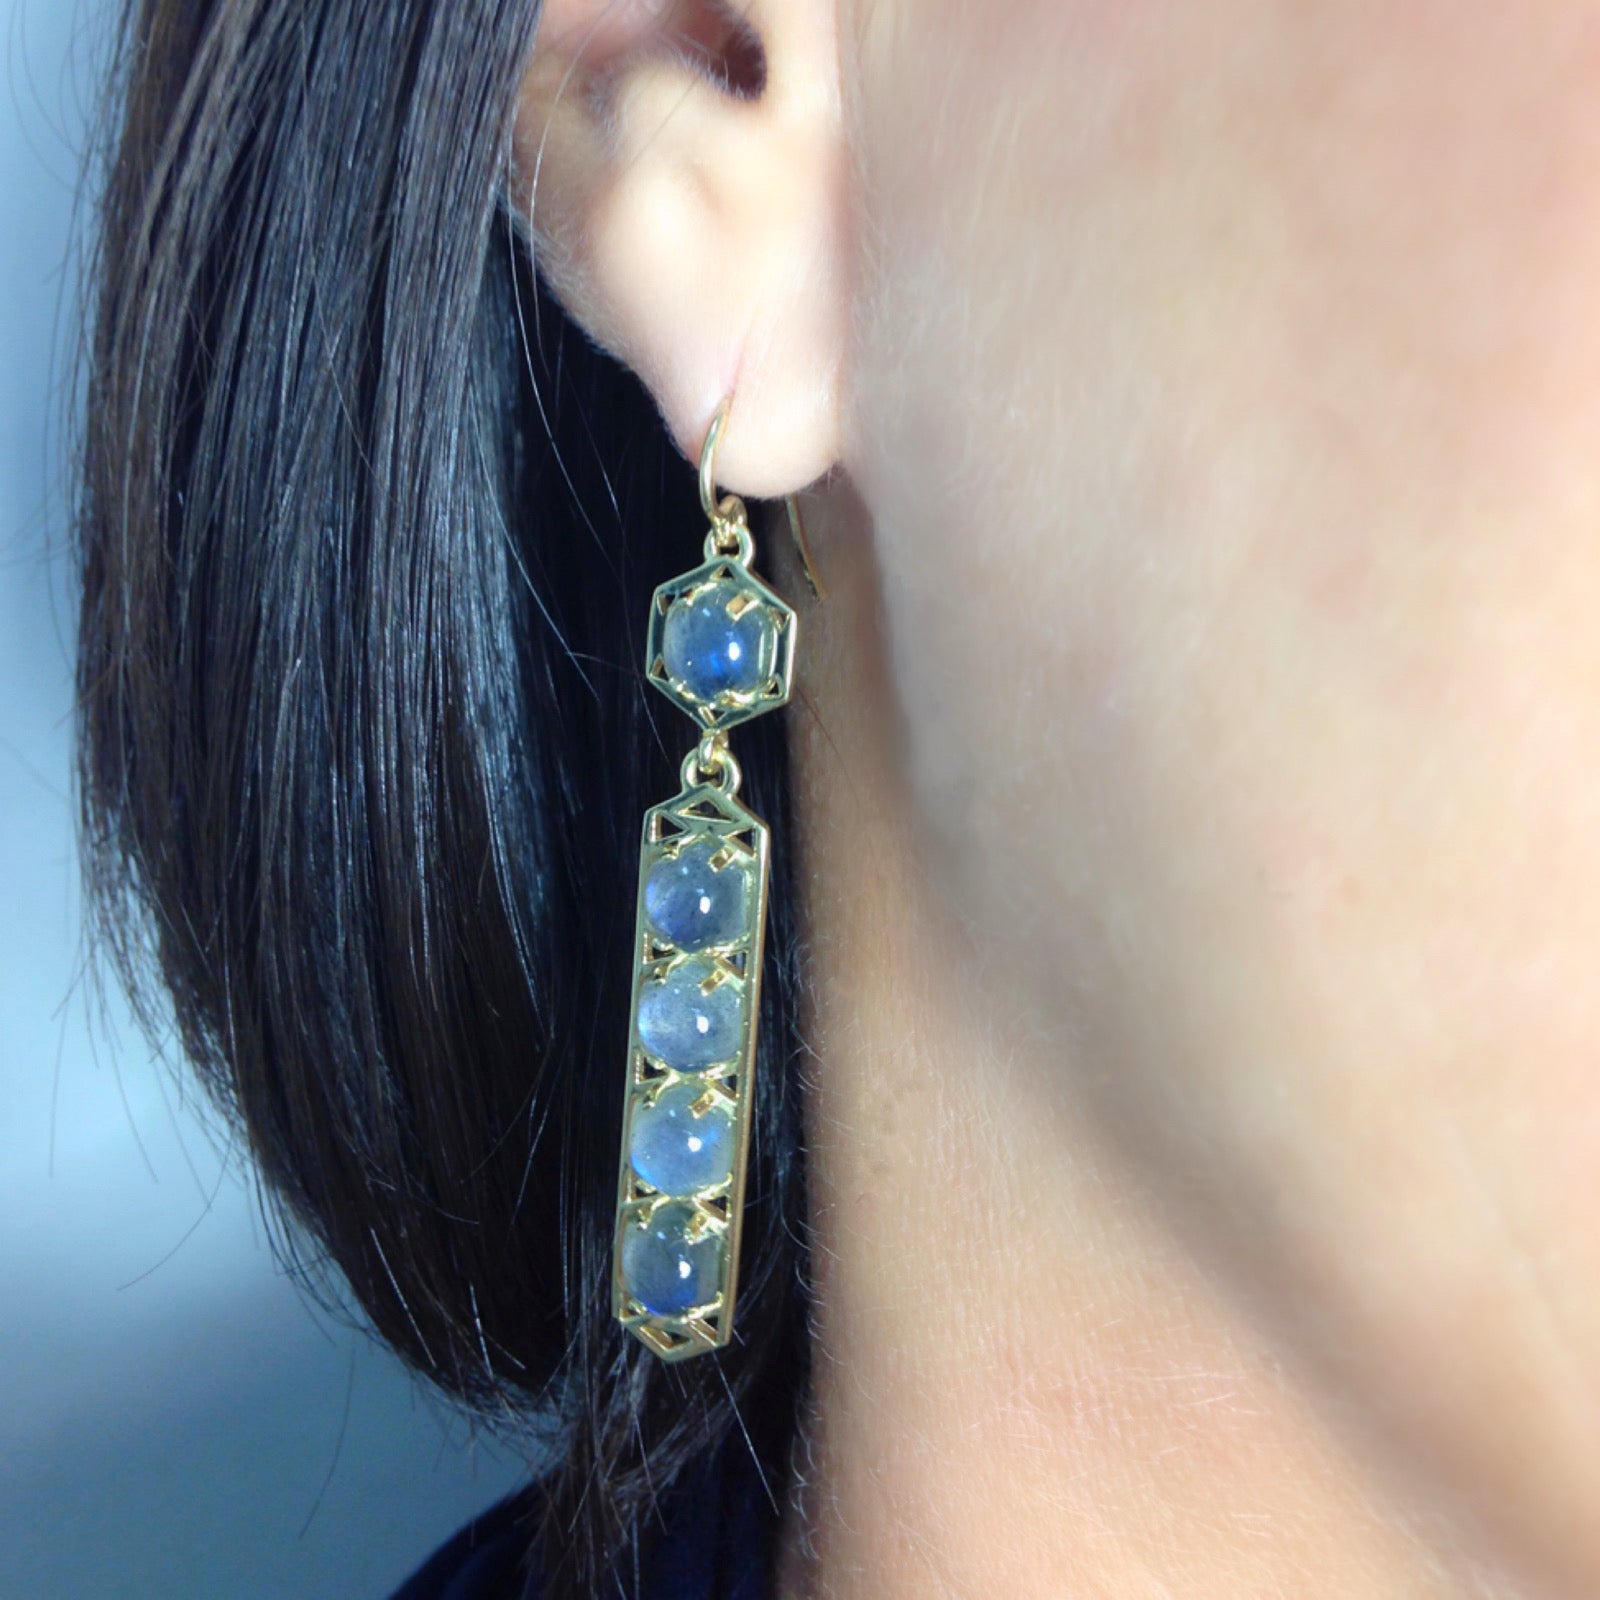 Stretto Earrings: 18k Gold, Hexagon Cabachon Labradorite